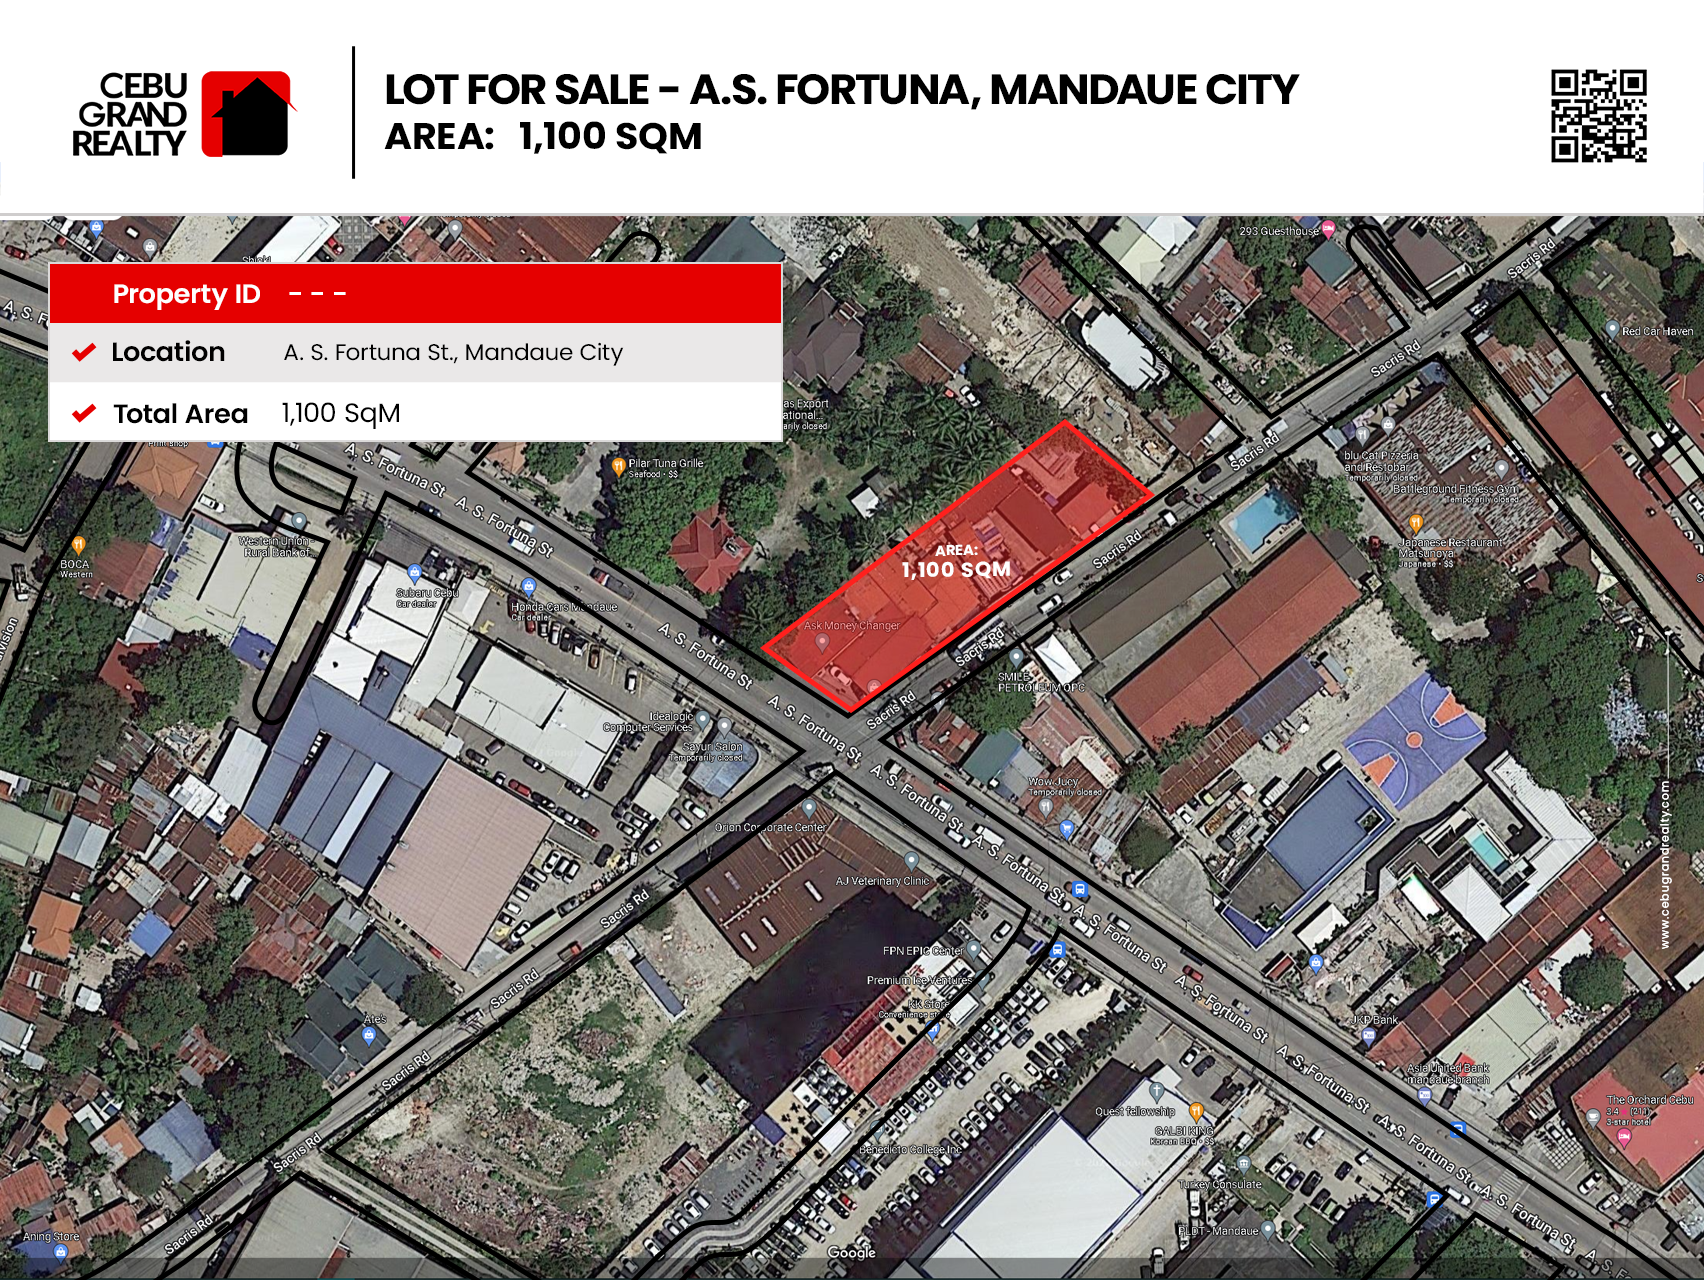 RCPASF1 1100 SqM Lot for Rent in Mandaue City - Cebu Grand Realty (2)